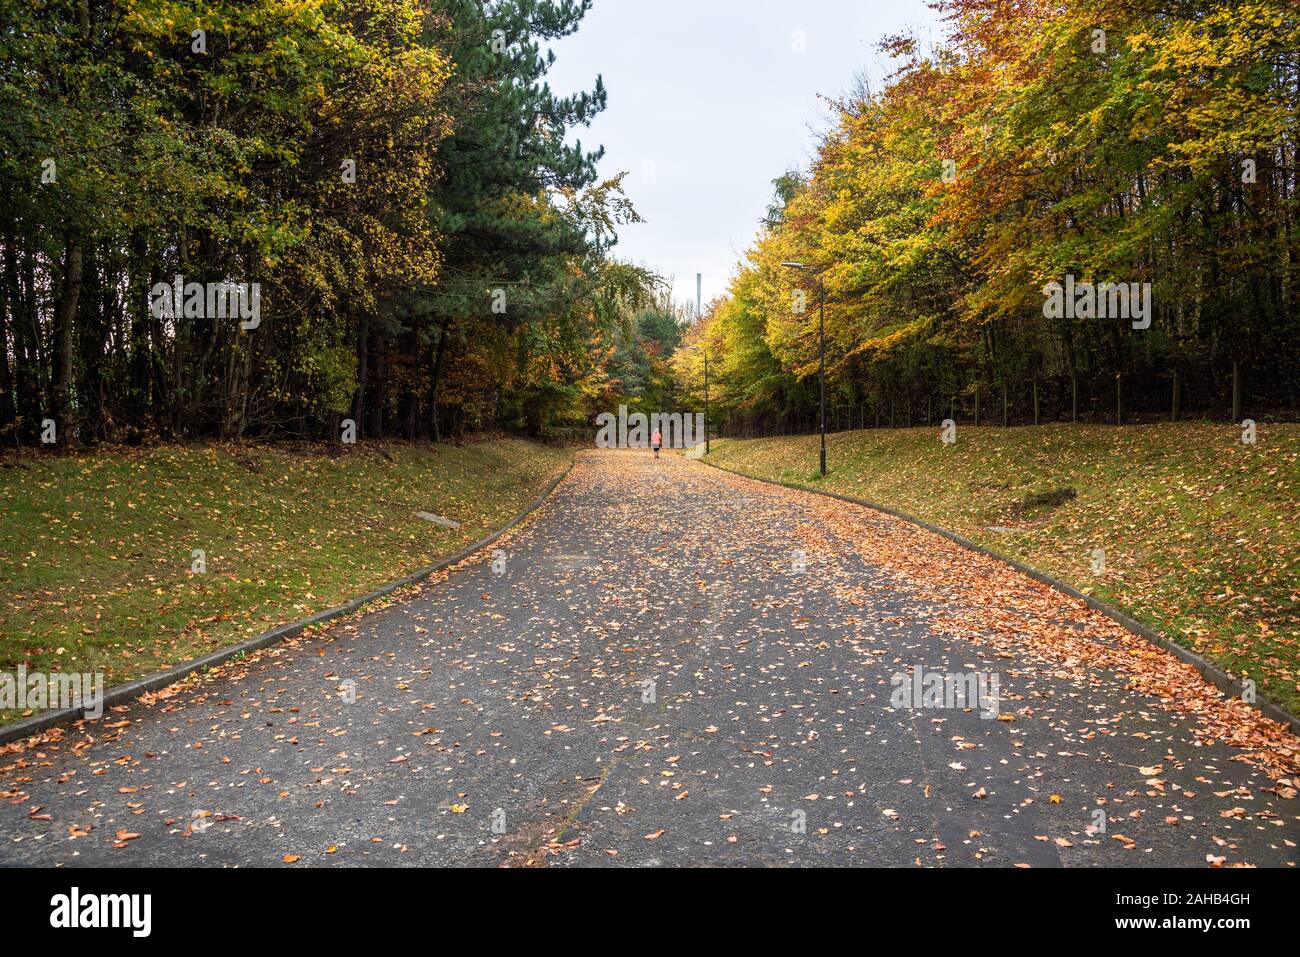 Calle peatonal cubierto de hojas en un parque. Una persona solitaria que se ejecutan en la carretera es visible en la distancia. Foto de stock